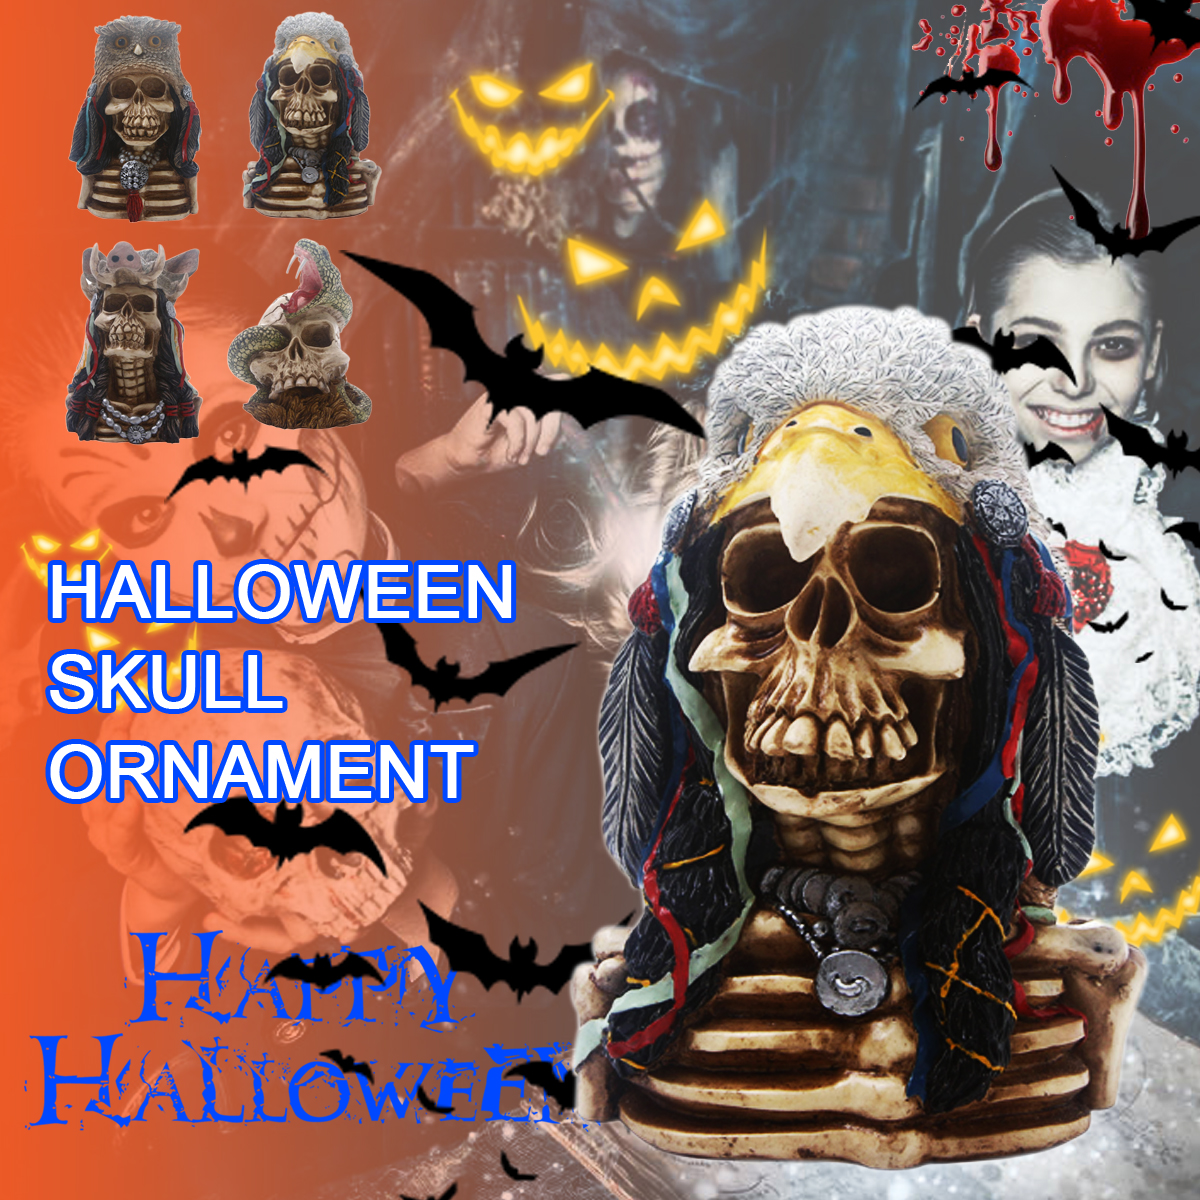 Halloween-Skull-Ornament-Resin-Skull-Head-Skeleton-Crafts-Statue-Desktop-Decorations-1583290-1